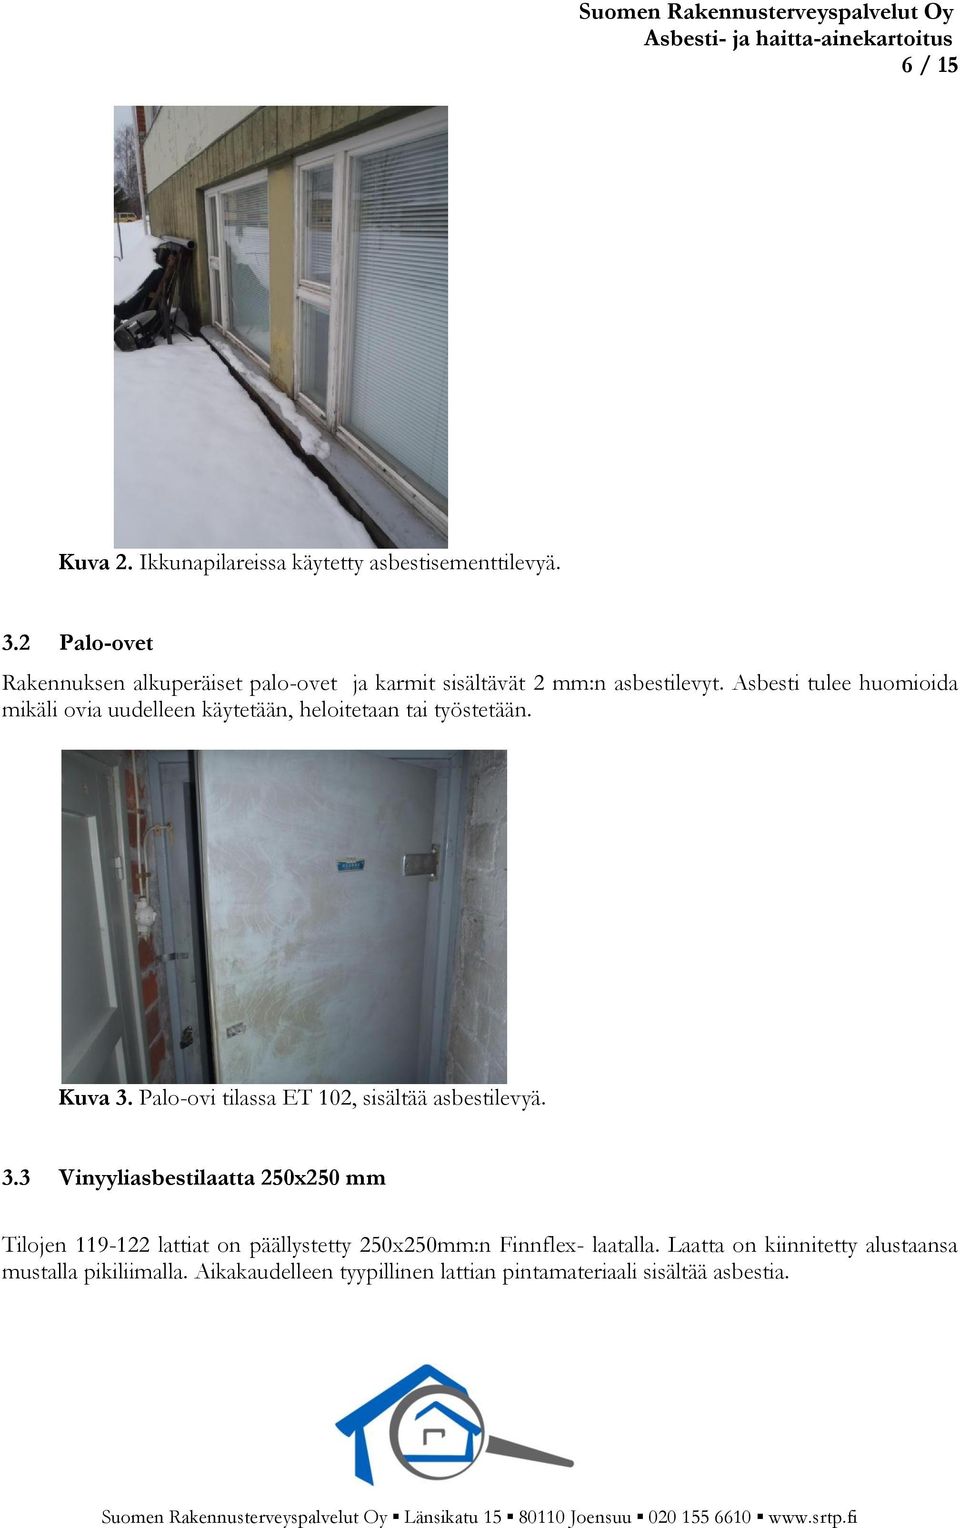 Asbesti tulee huomioida mikäli ovia uudelleen käytetään, heloitetaan tai työstetään. Kuva 3.